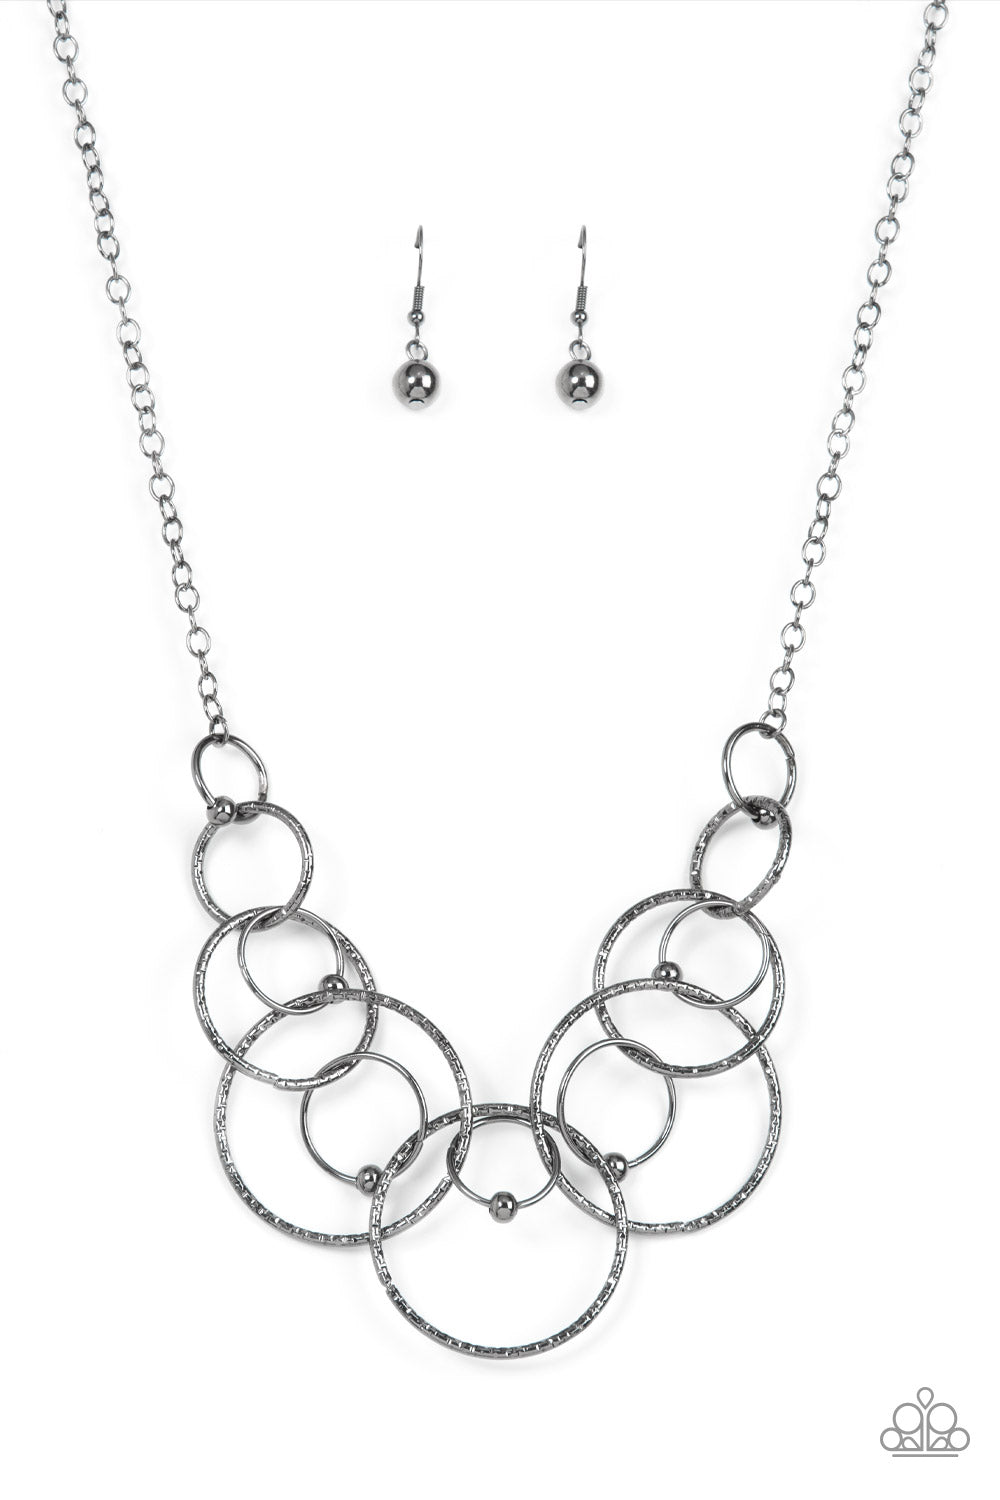 Encircled in Elegance - Gunmetal Beads & Interlocking Ring Paparazzi Necklace & matching earrings